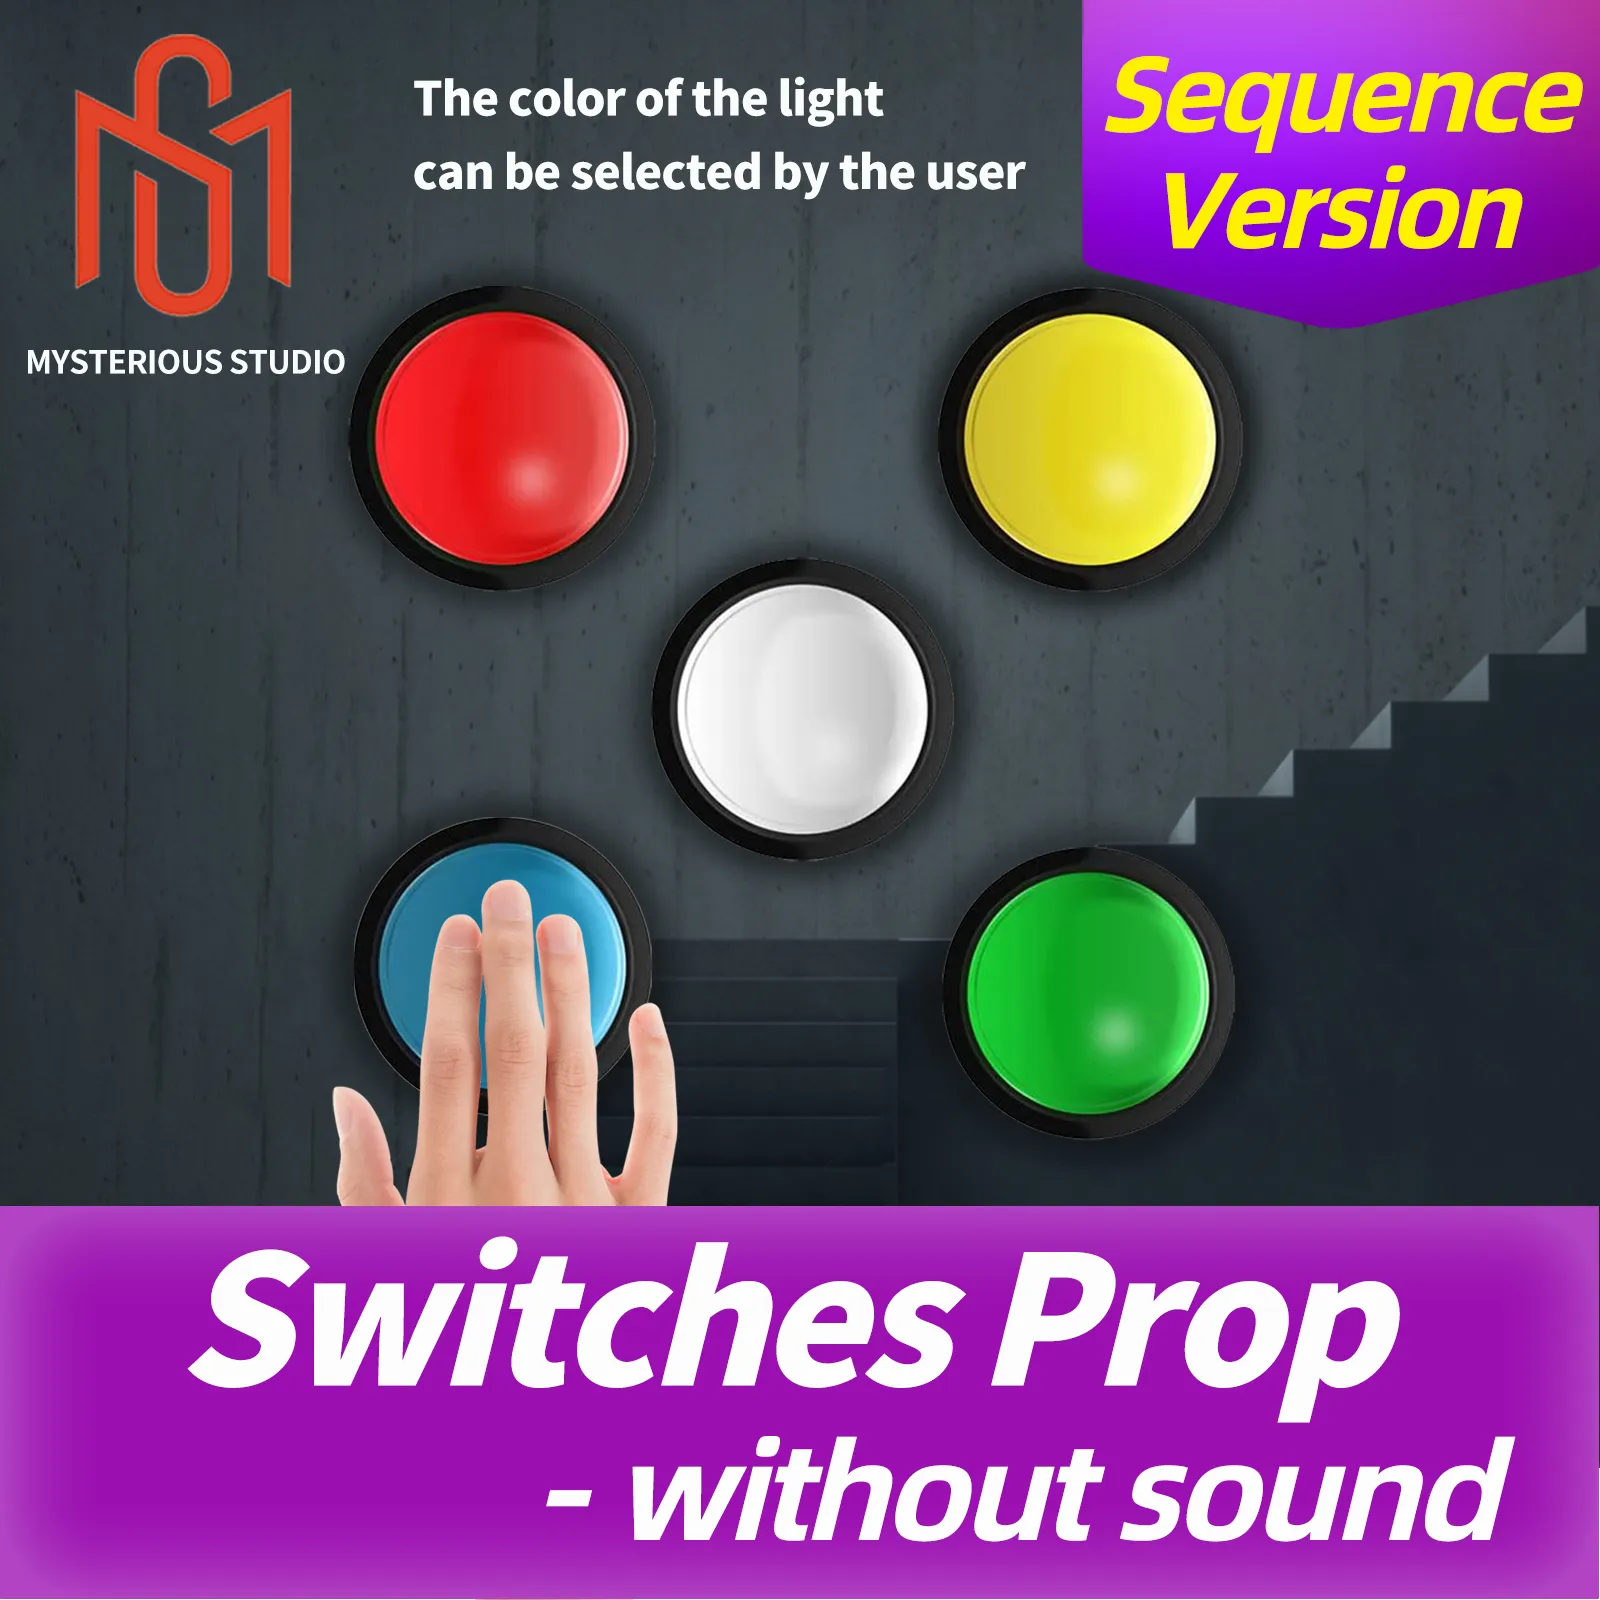 Gizemli Stüdyo Gizli Oda Kaçış Oyunu Mekanizması Pervane Elektronik Bulmaca Işık Oyunu Renk Düğmesi Sıralı Tetik Kilini Açma